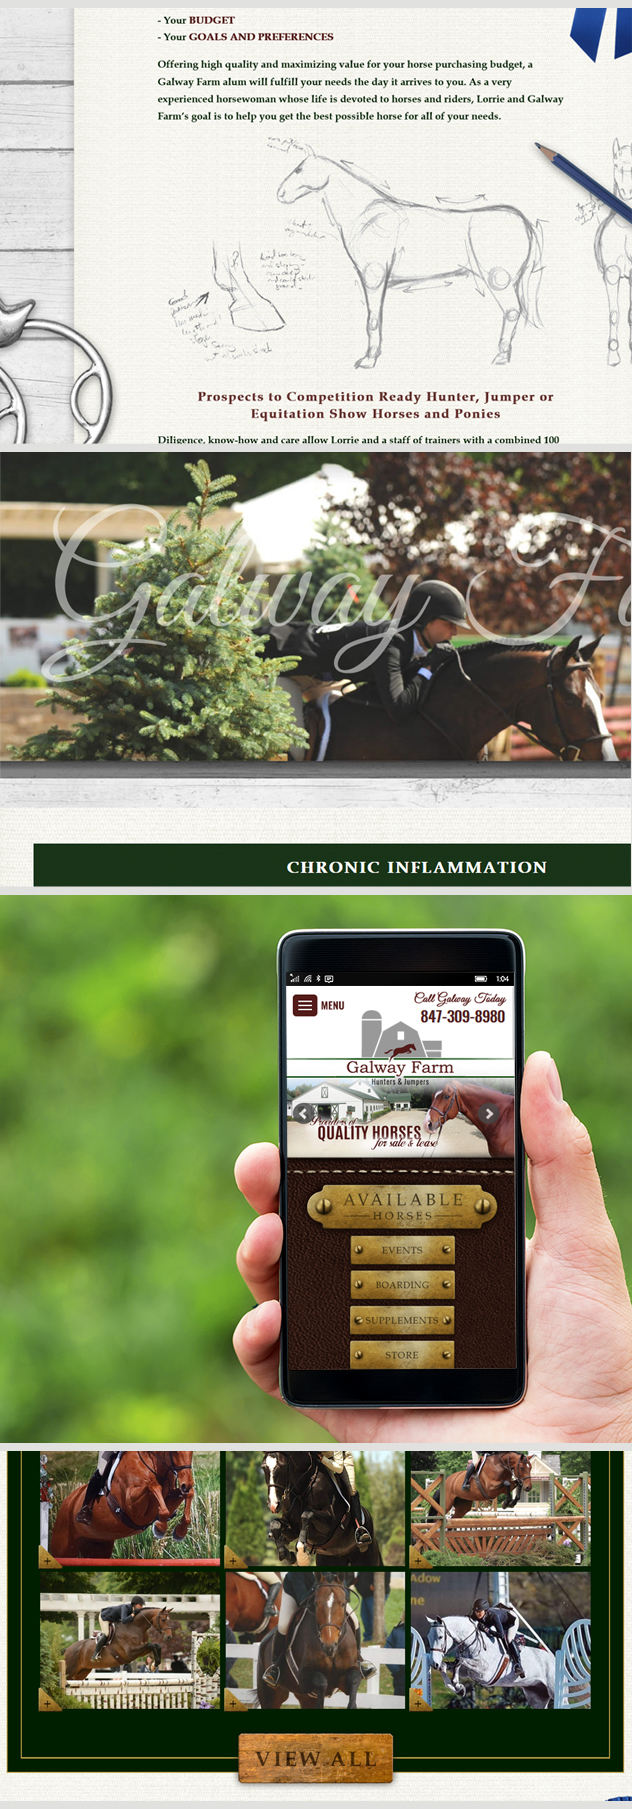 Milwaukee Web Marketing for Horses